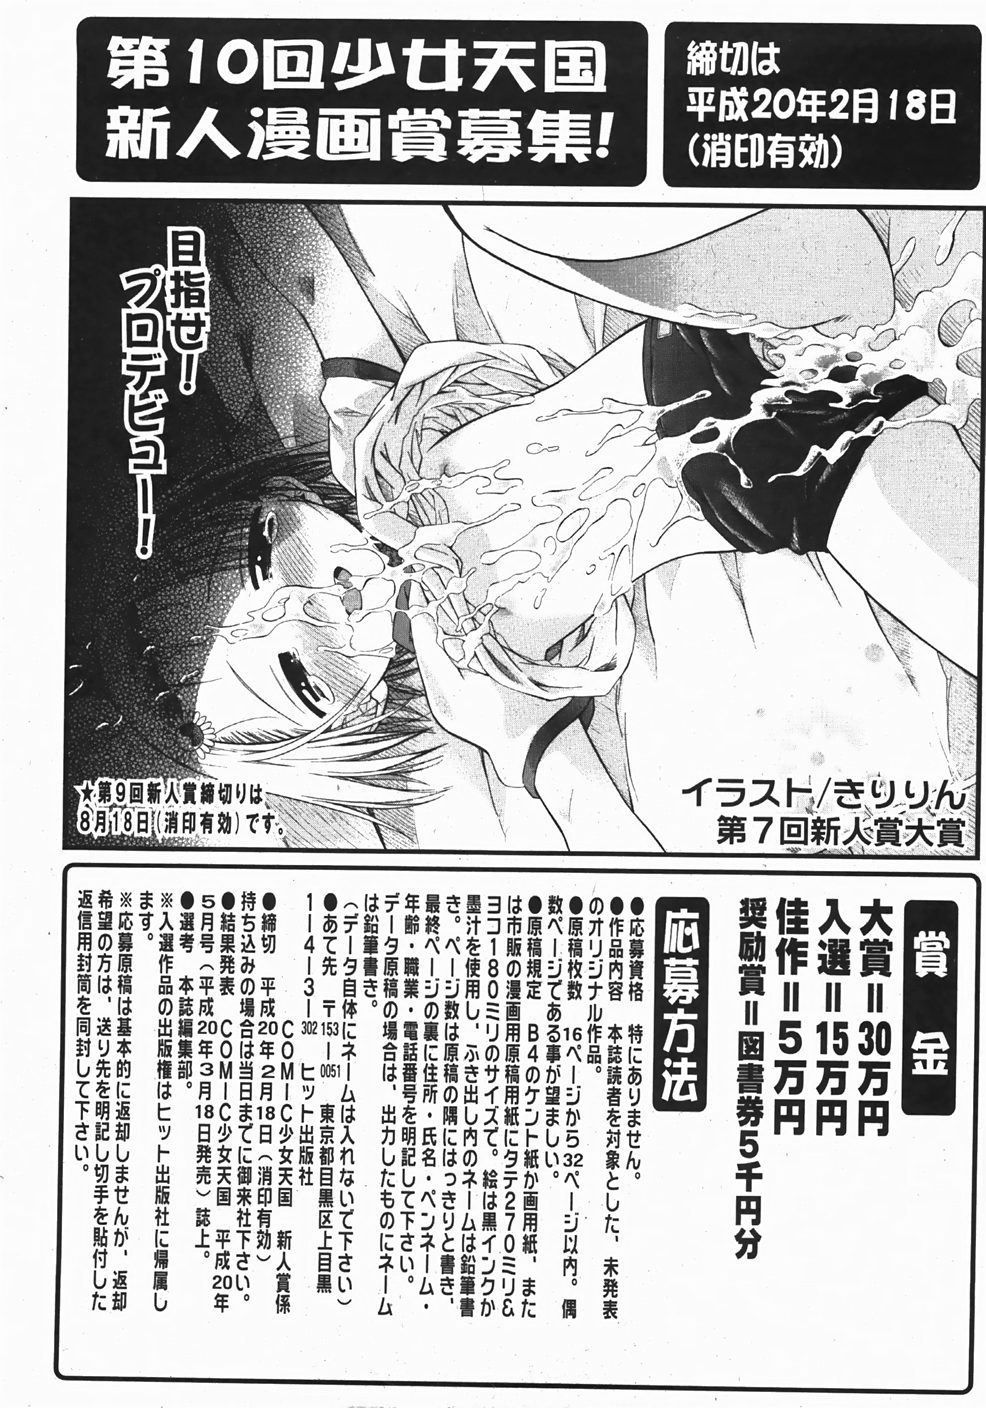 Comic Shoujo Tengoku 33 (2007-10) page 24 full